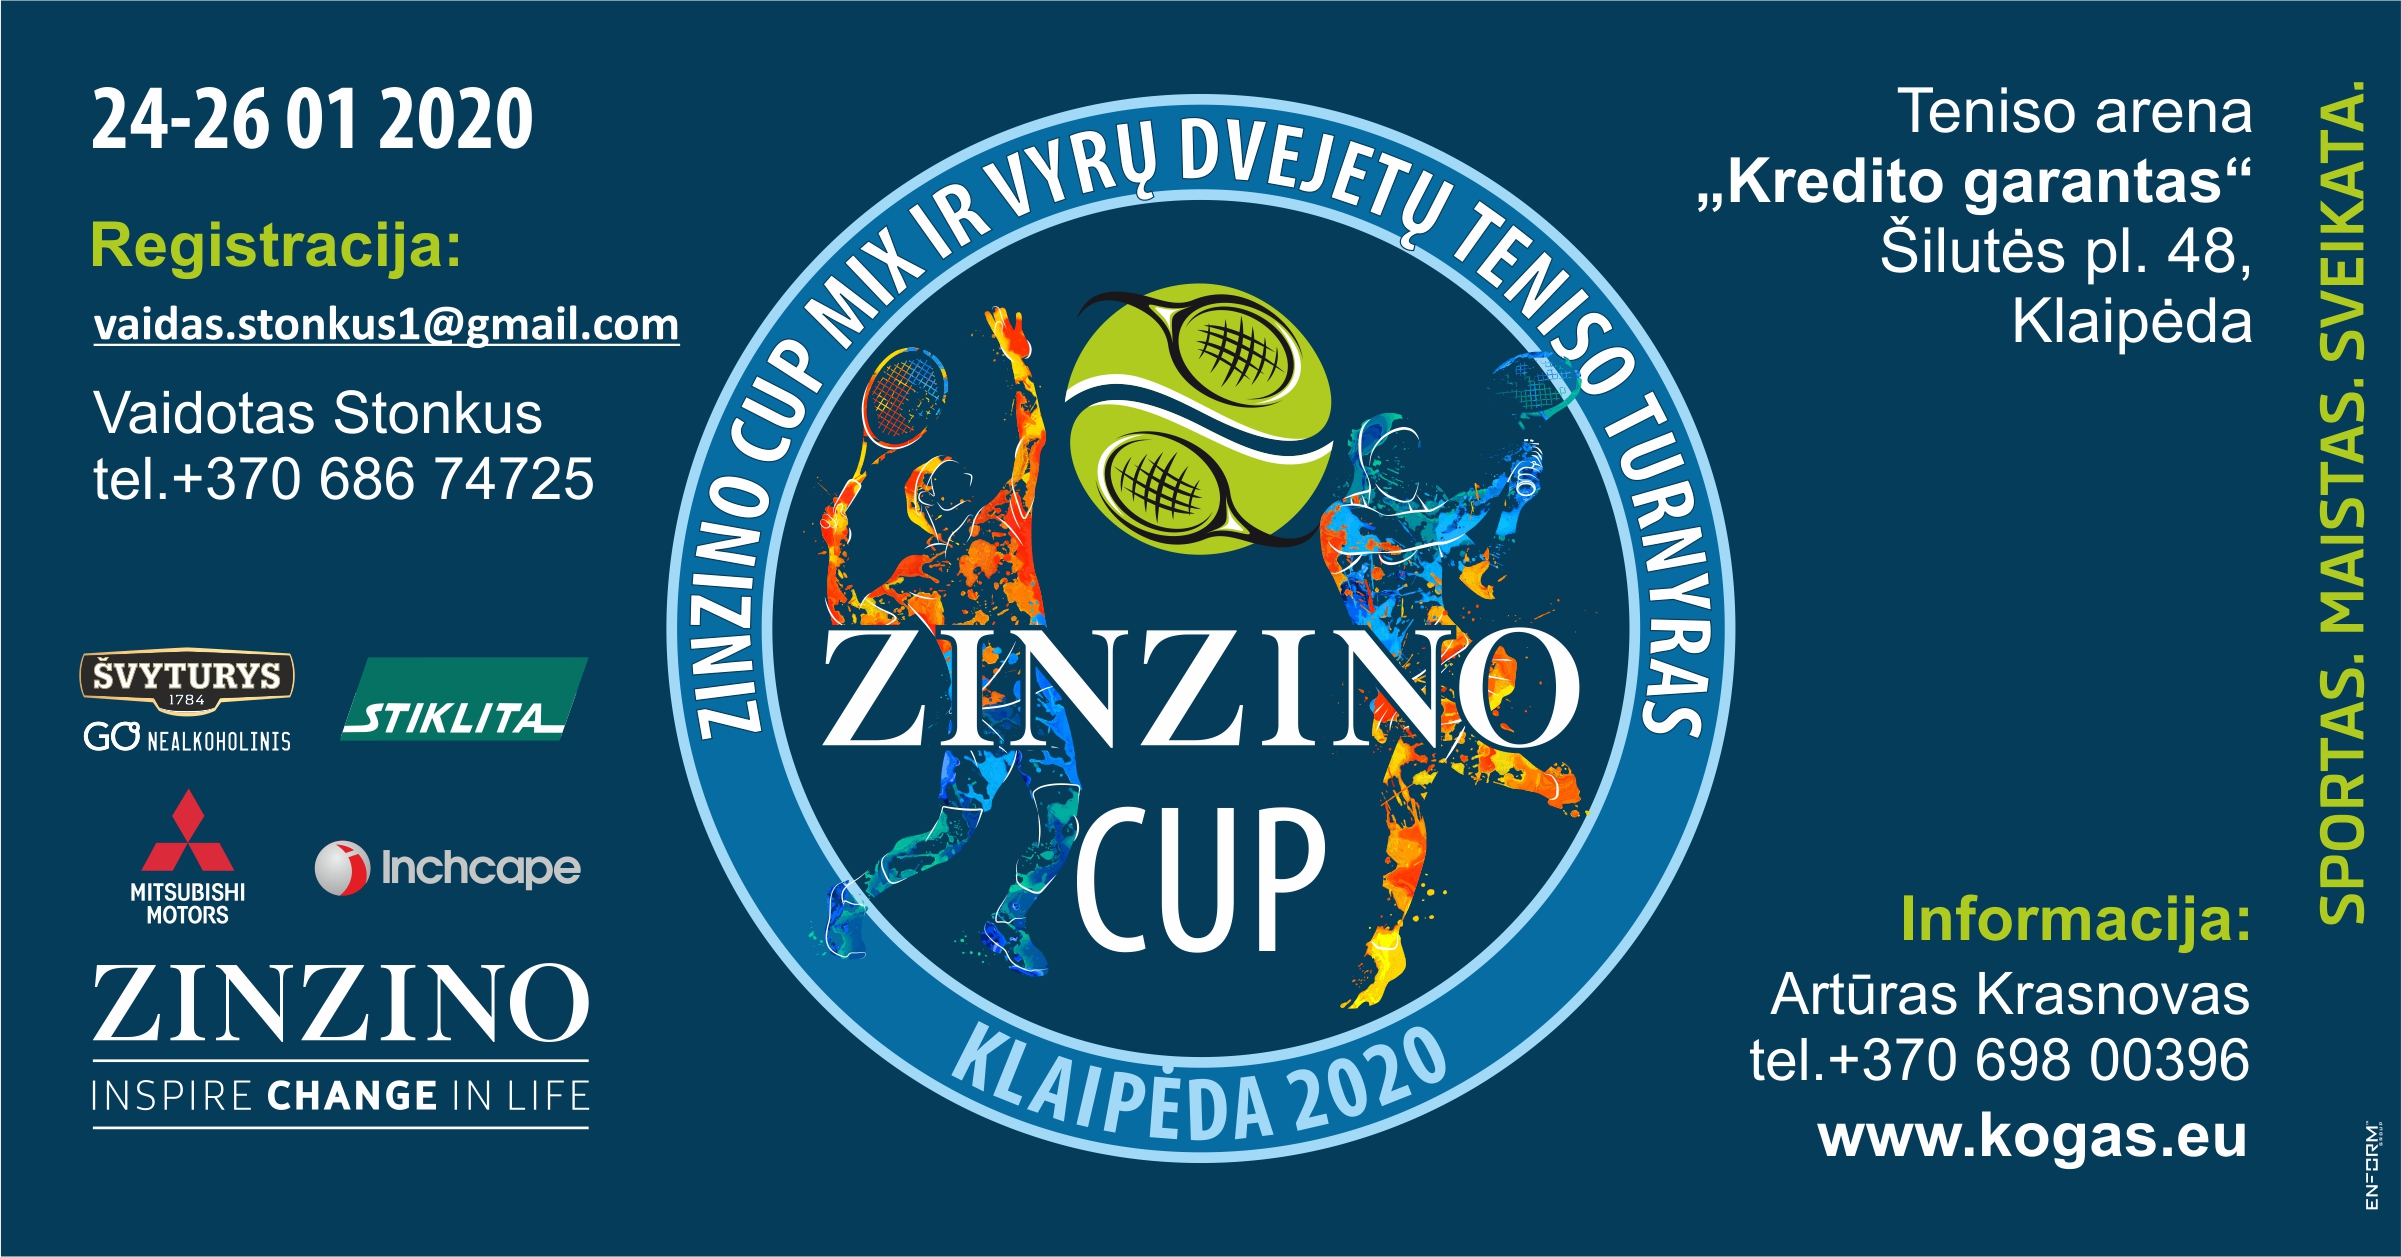 Dvejetų turnyras "ZINZINO CUP 2020"